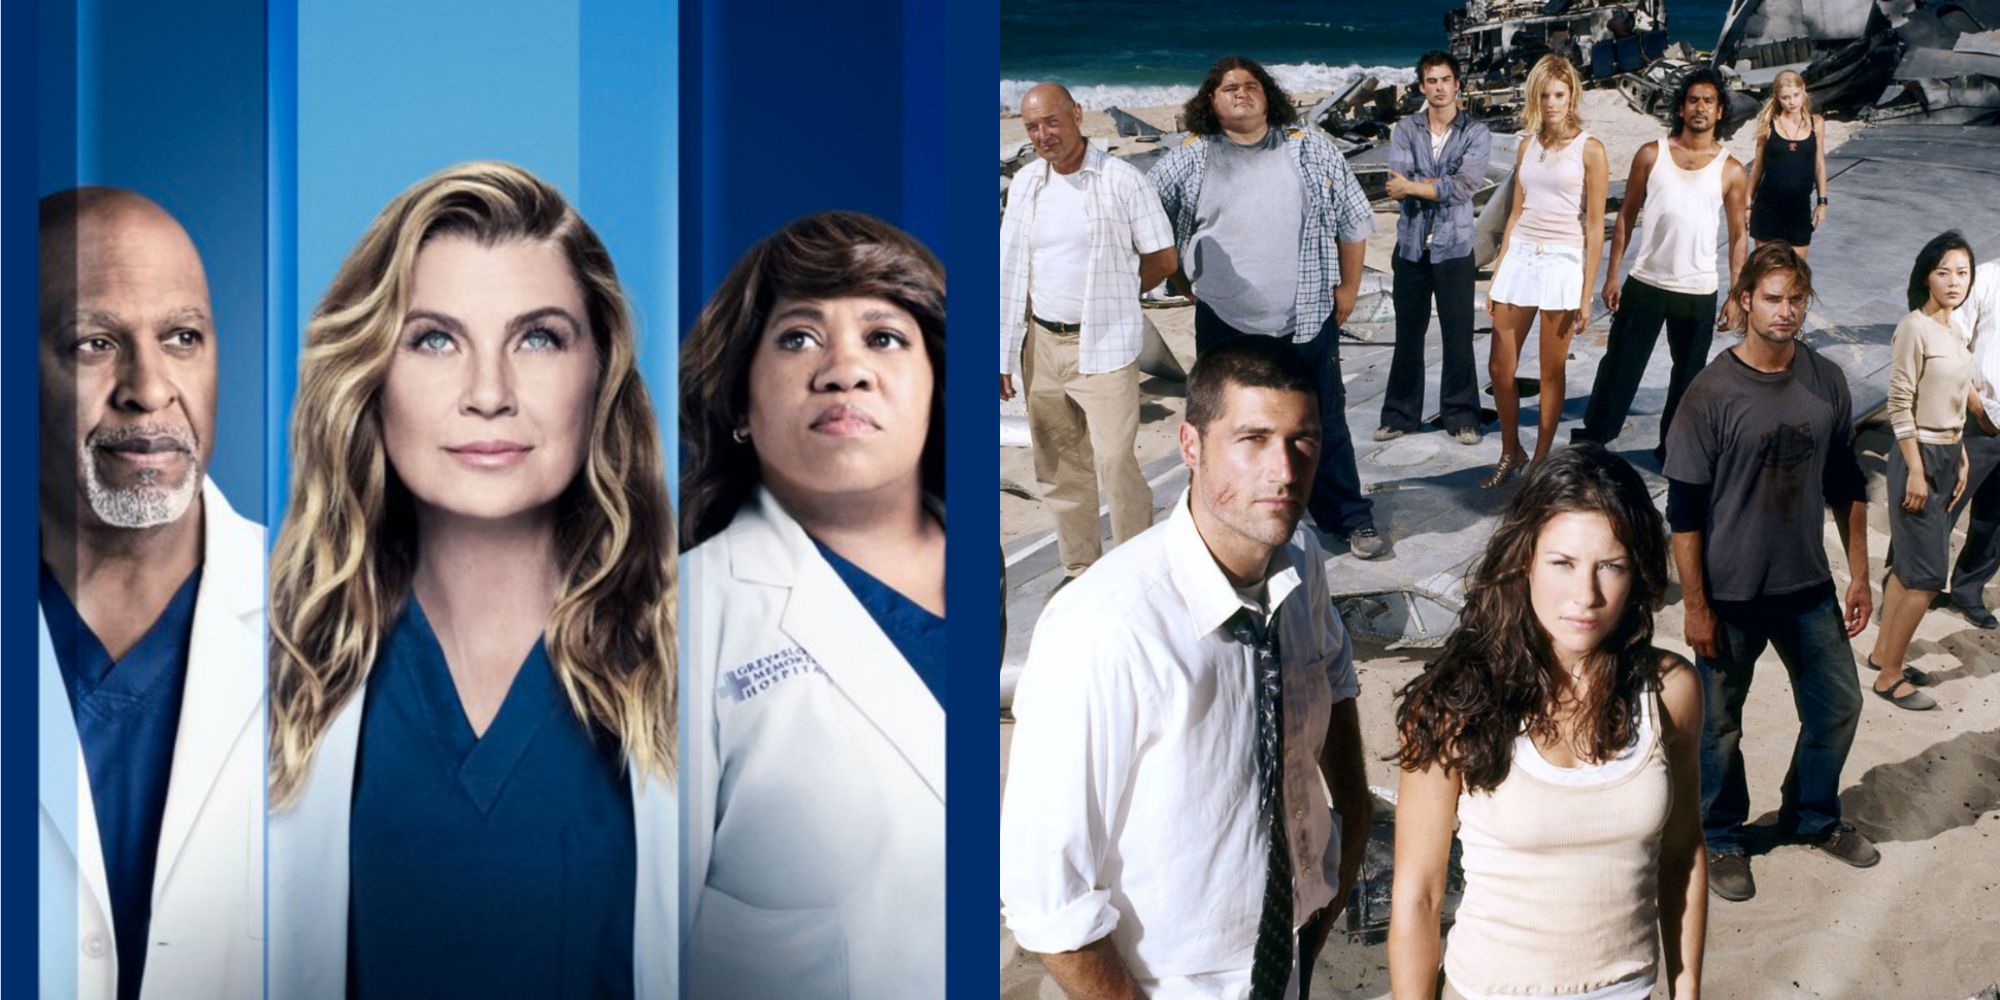 10 espectáculos en los que Grey's Anatomy podría cruzarse, según Reddit